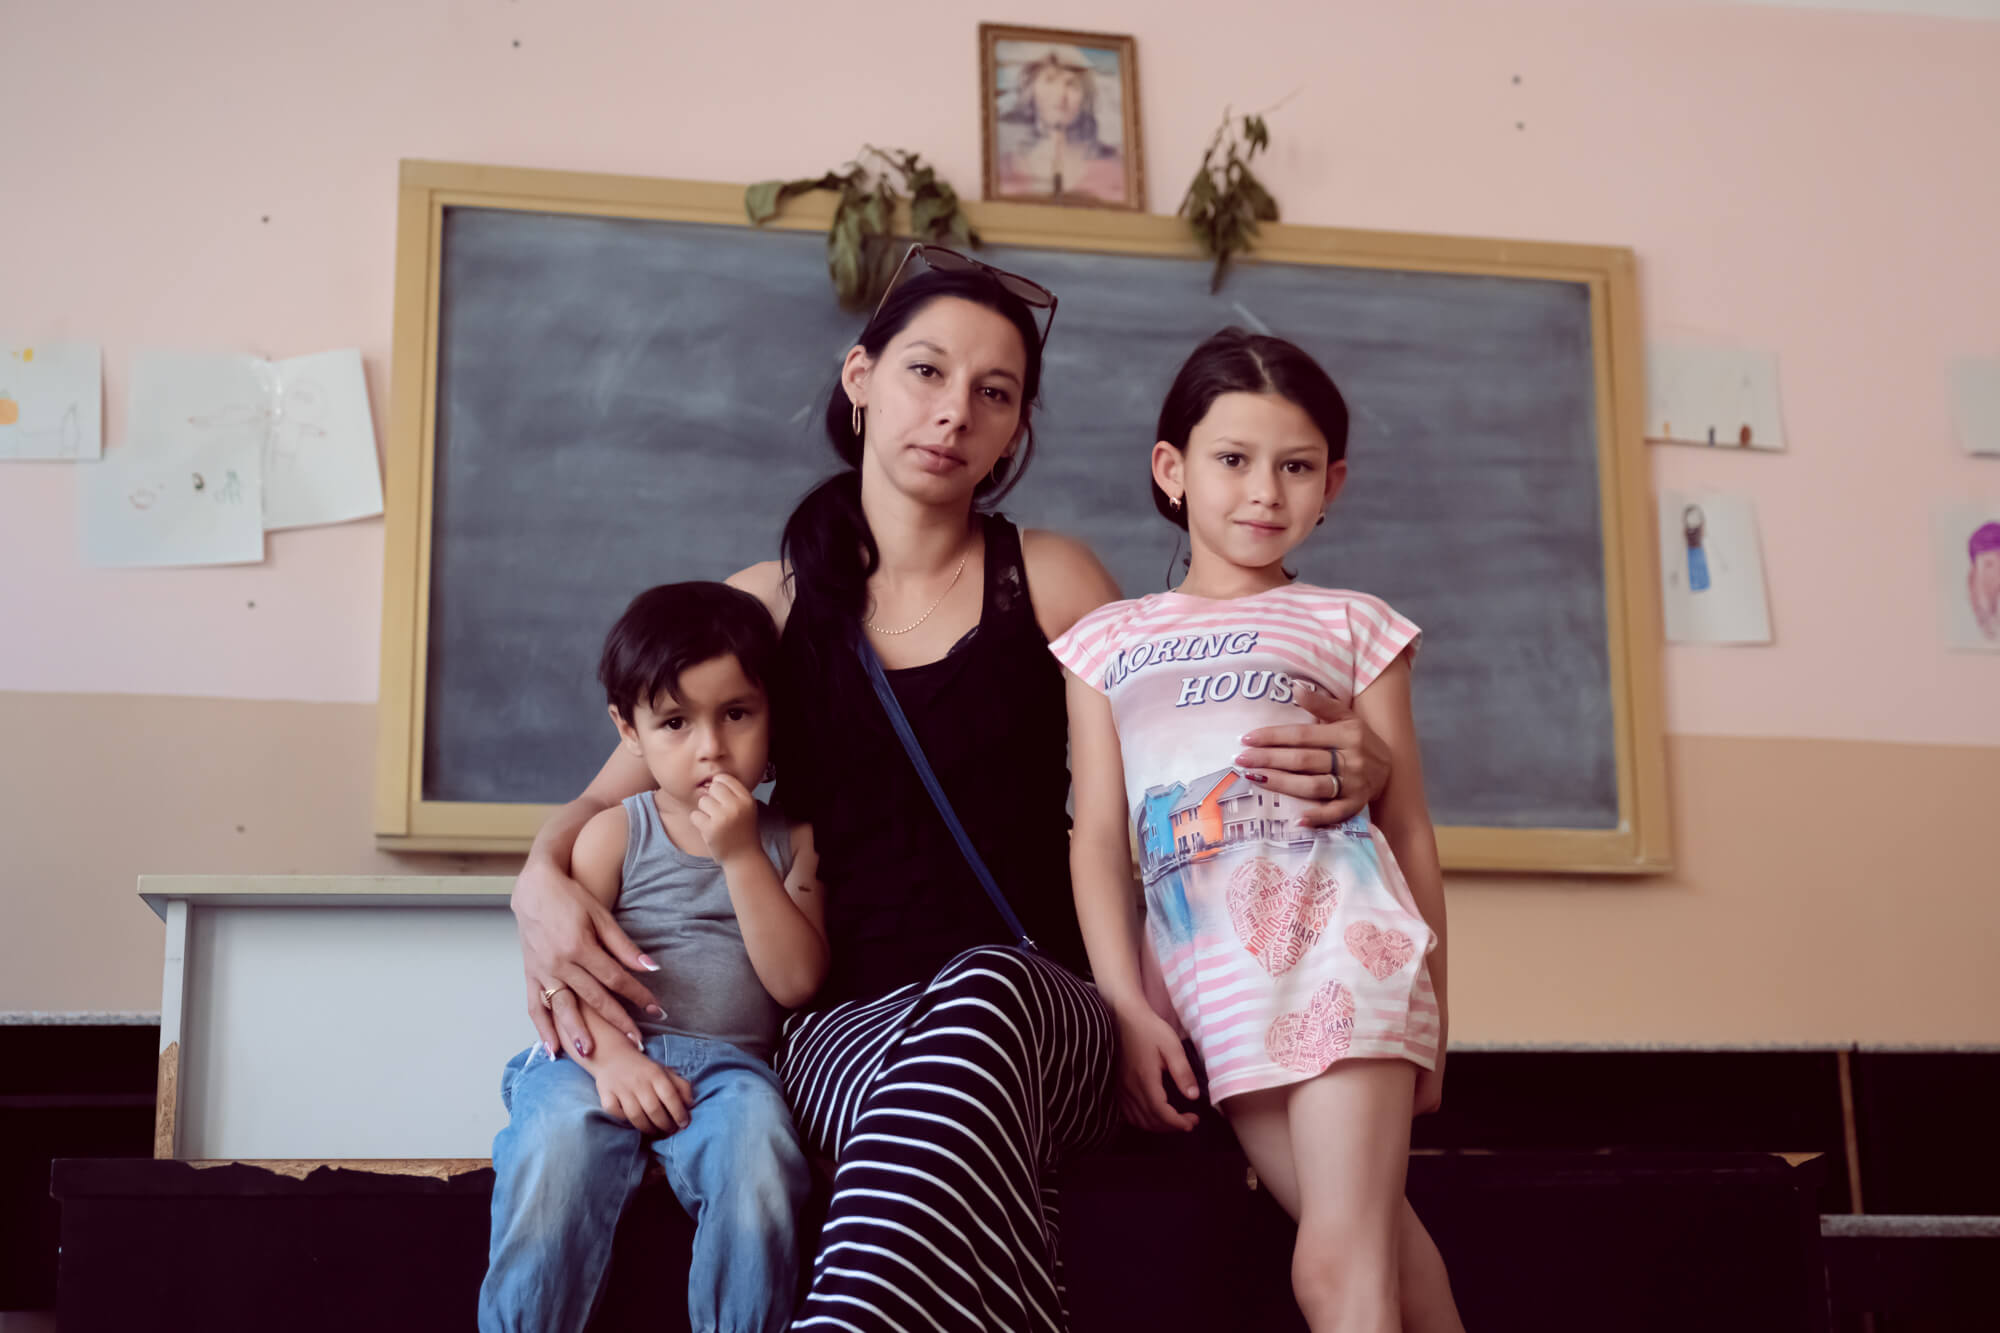 Крістіна та її діти, які нарешті одужали після двотижневої хвороби